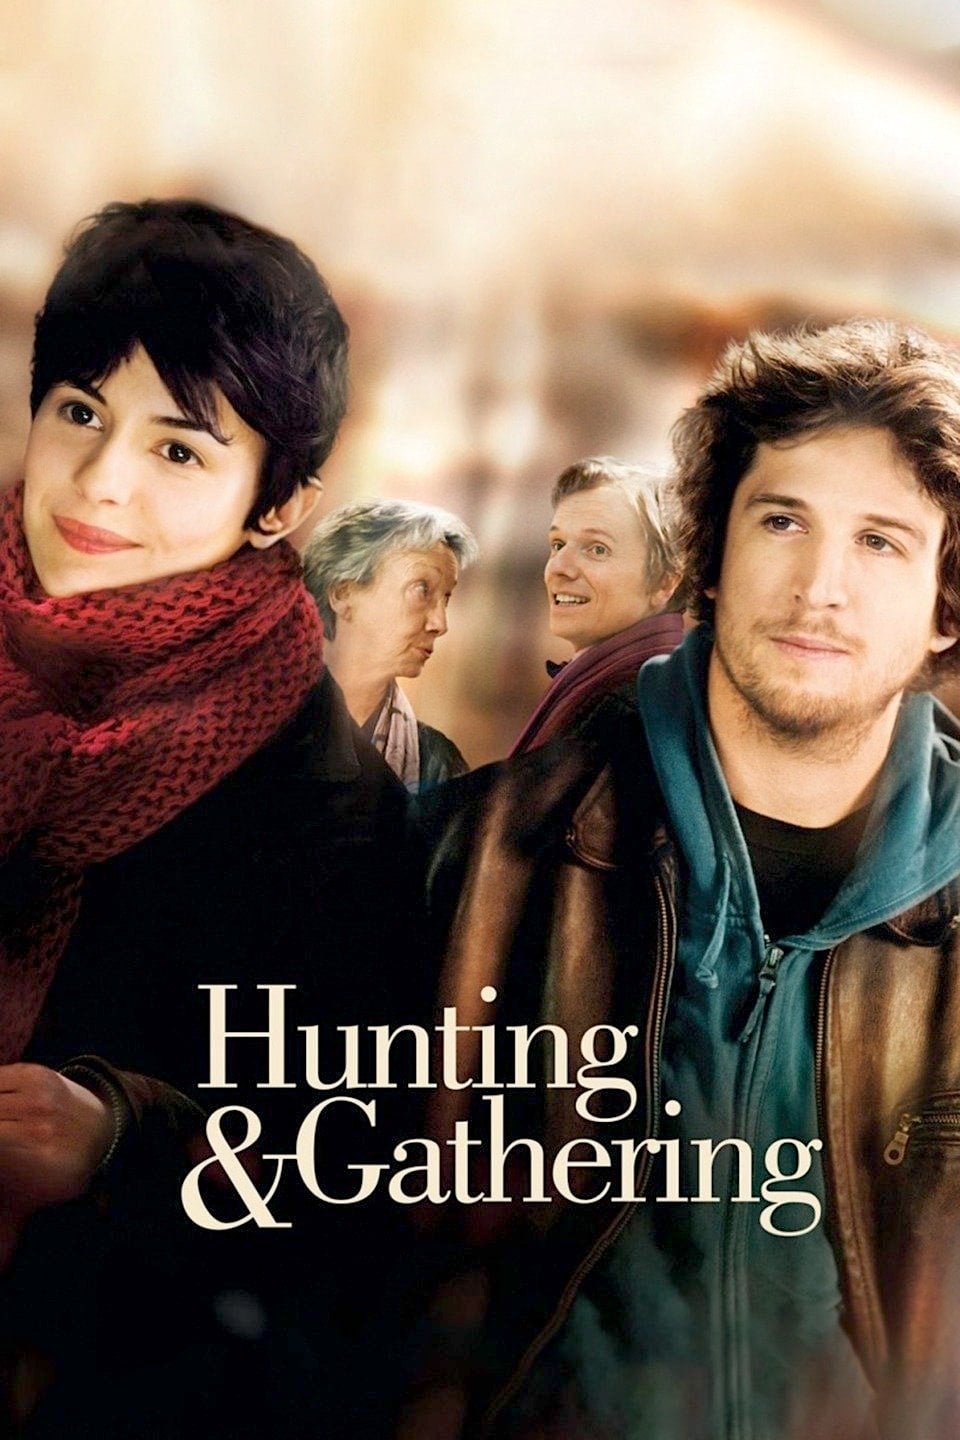 Hunting & Gathering